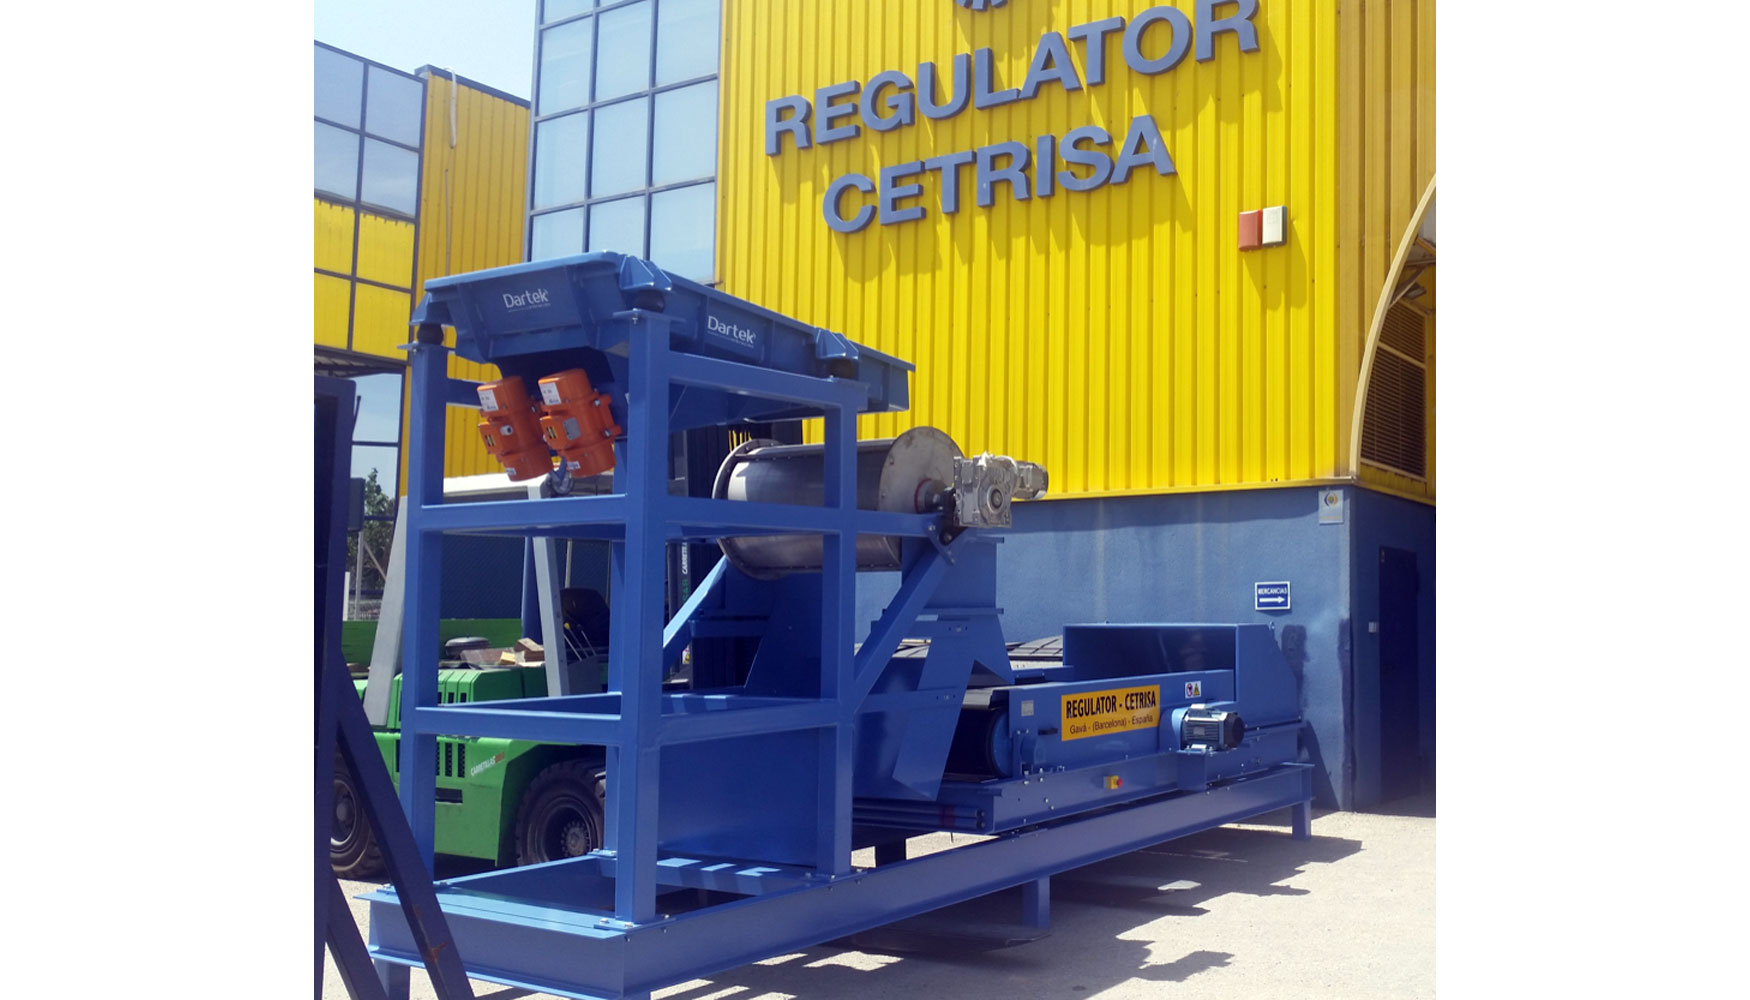 Regulator  Cetrisa es un referente en Europa en la fabricacin de equipos para la separacin y el reciclaje de metales